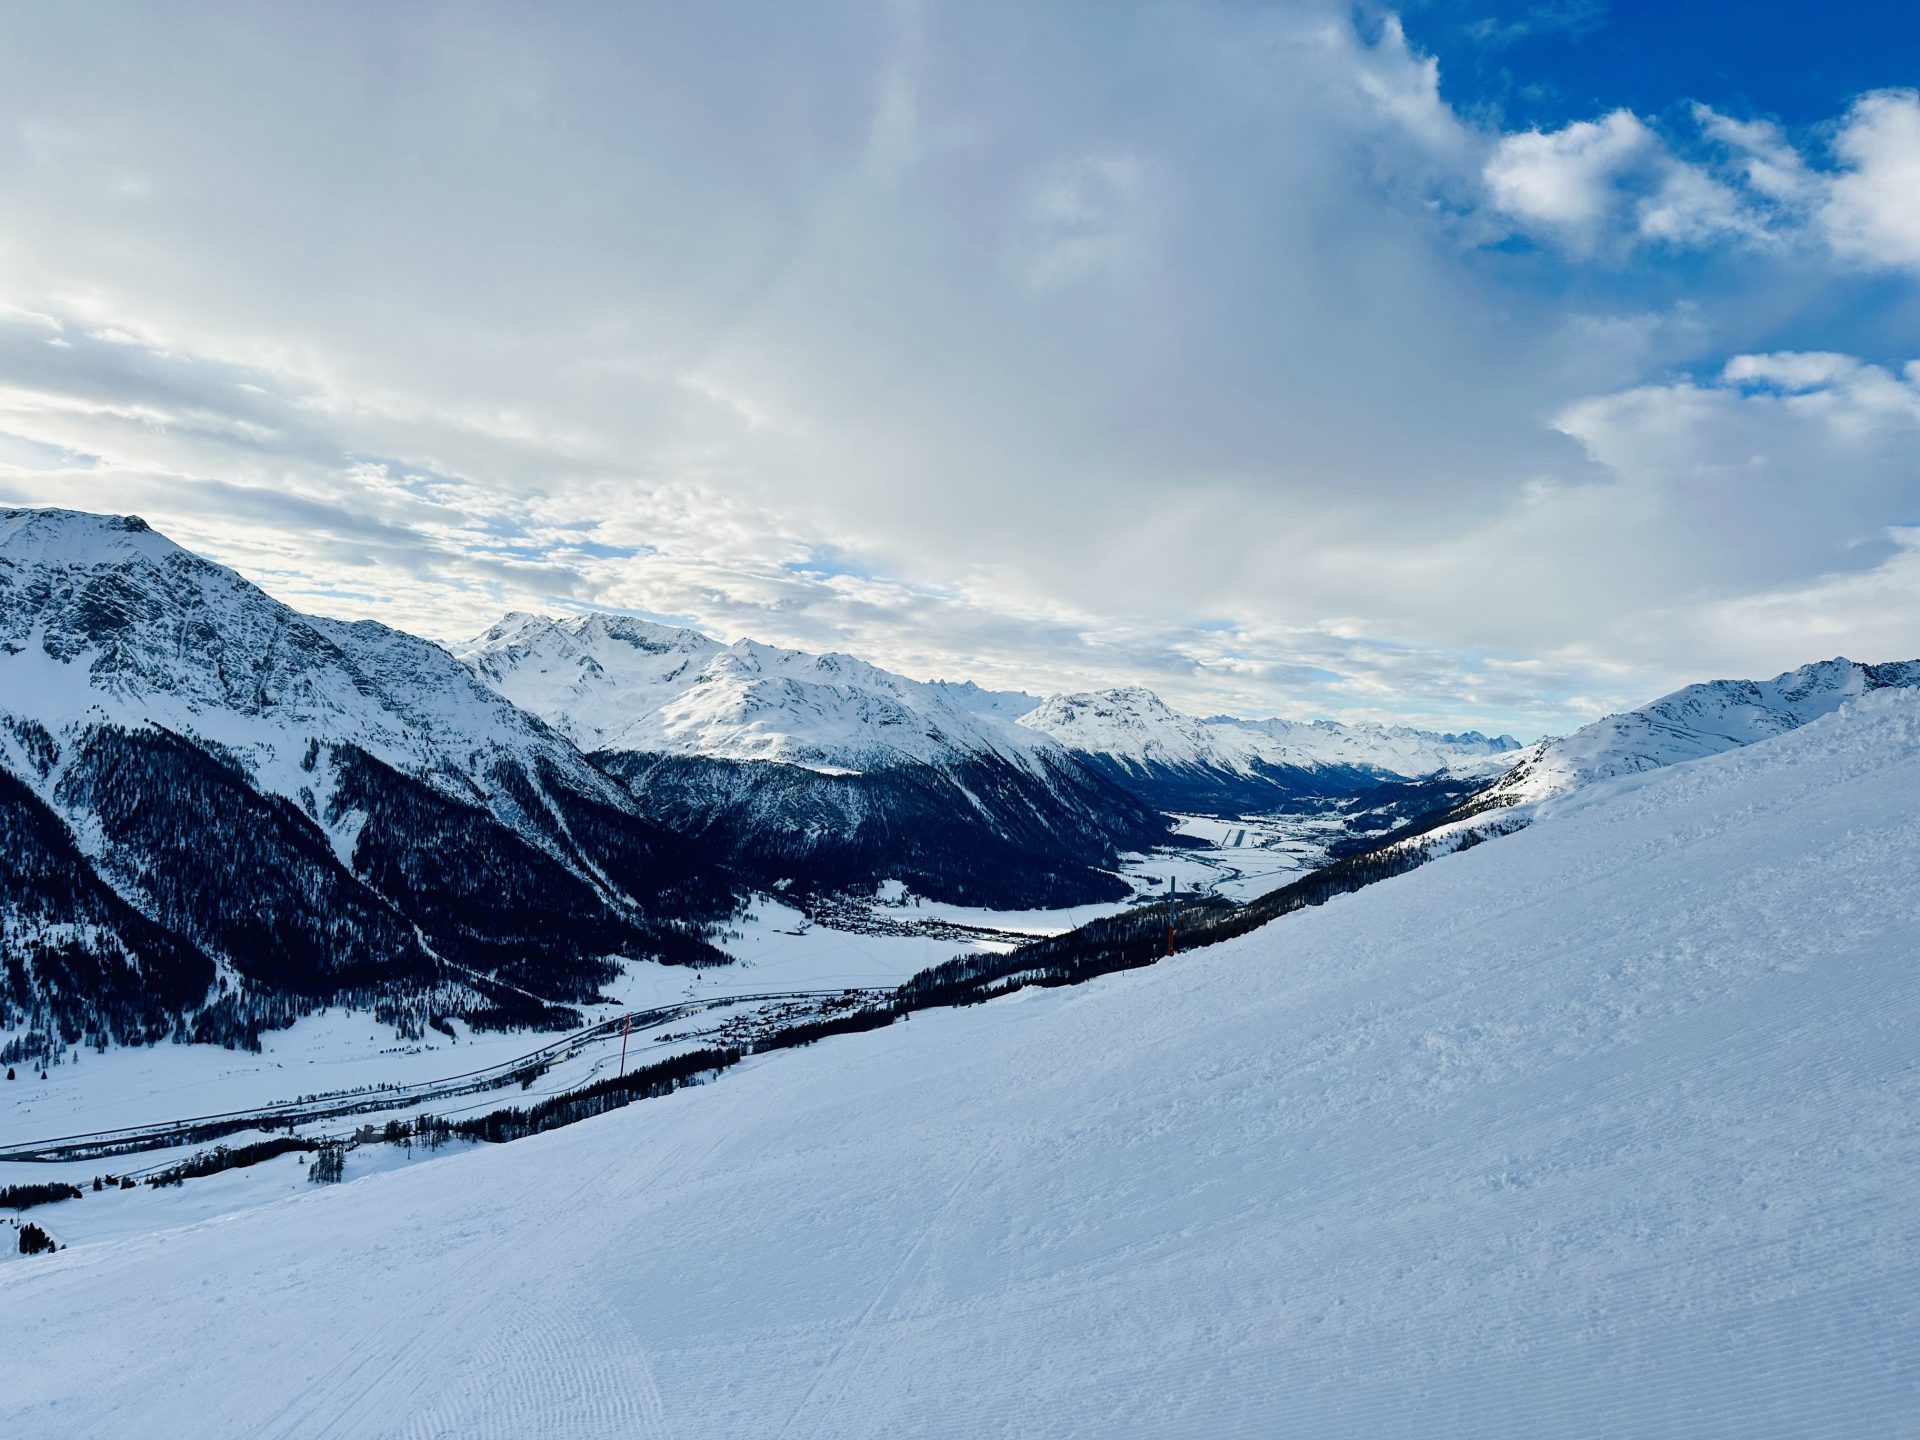 Wir stellen die Resorts vor, die durch St. Moritz in der Schweiz zu Aikon hinzugefügt wurden